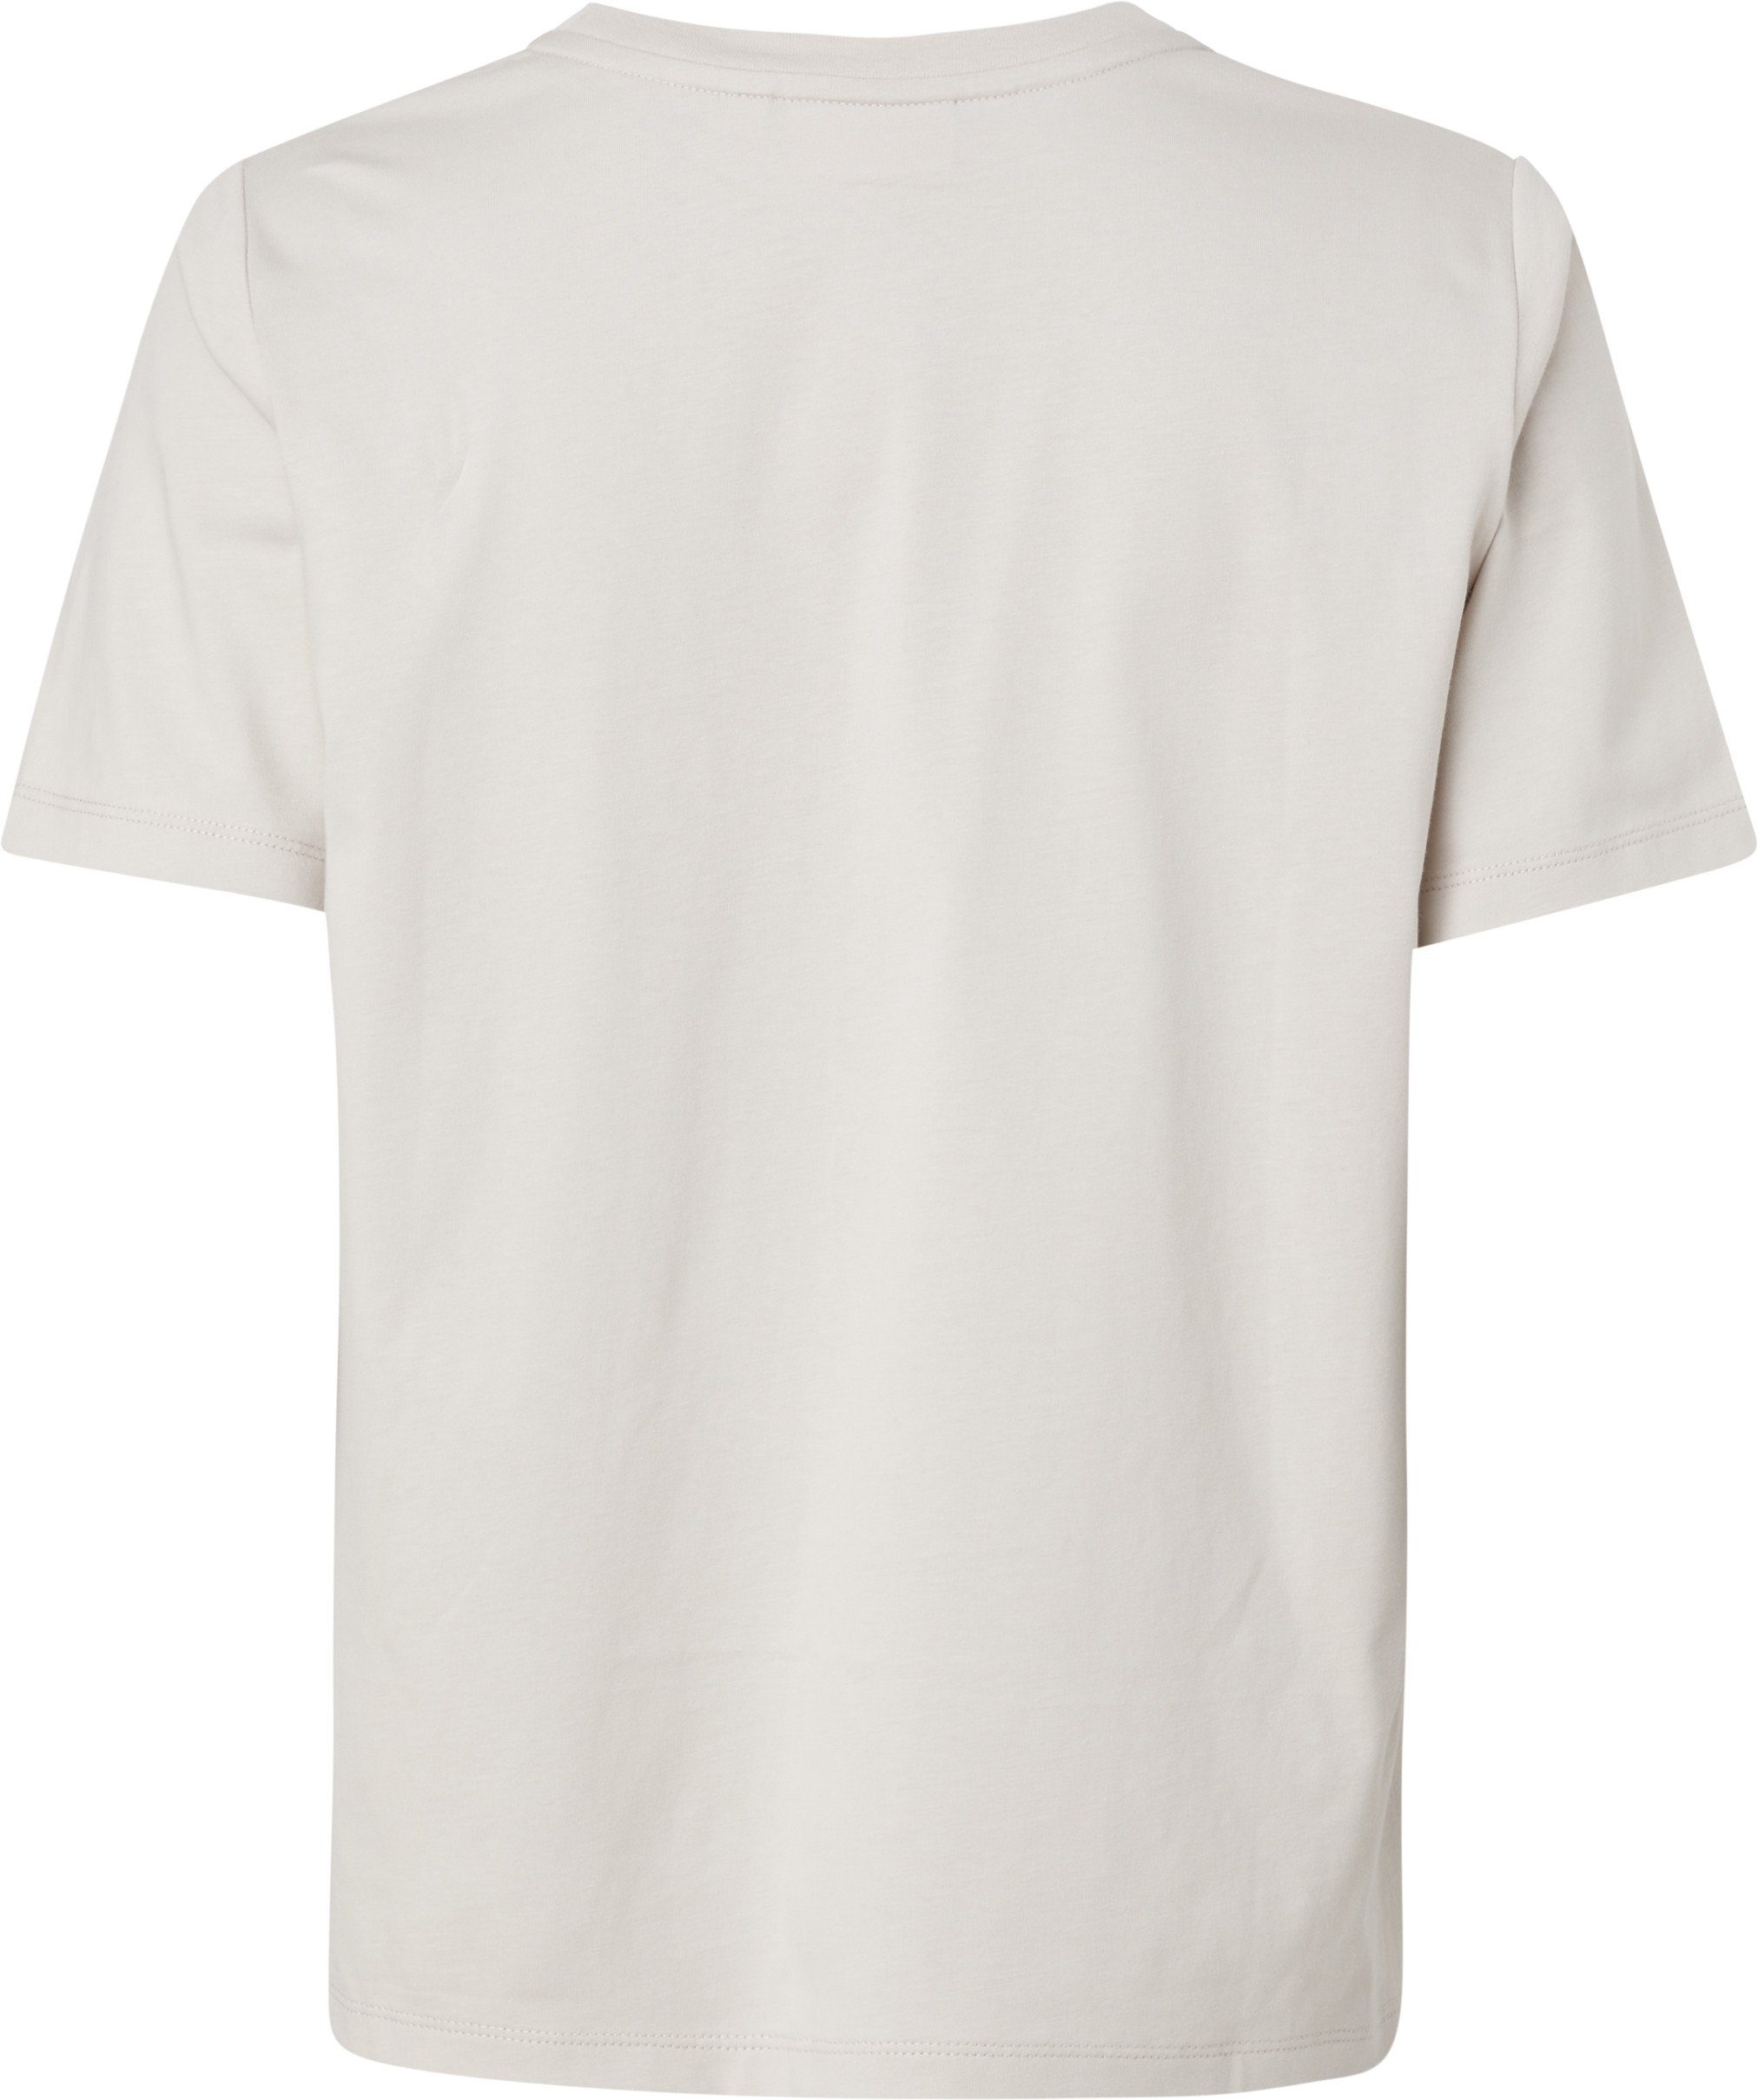 Calvin Klein MICRO Gray Silver aus reiner LOGO Baumwolle T-Shirt T-SHIRT